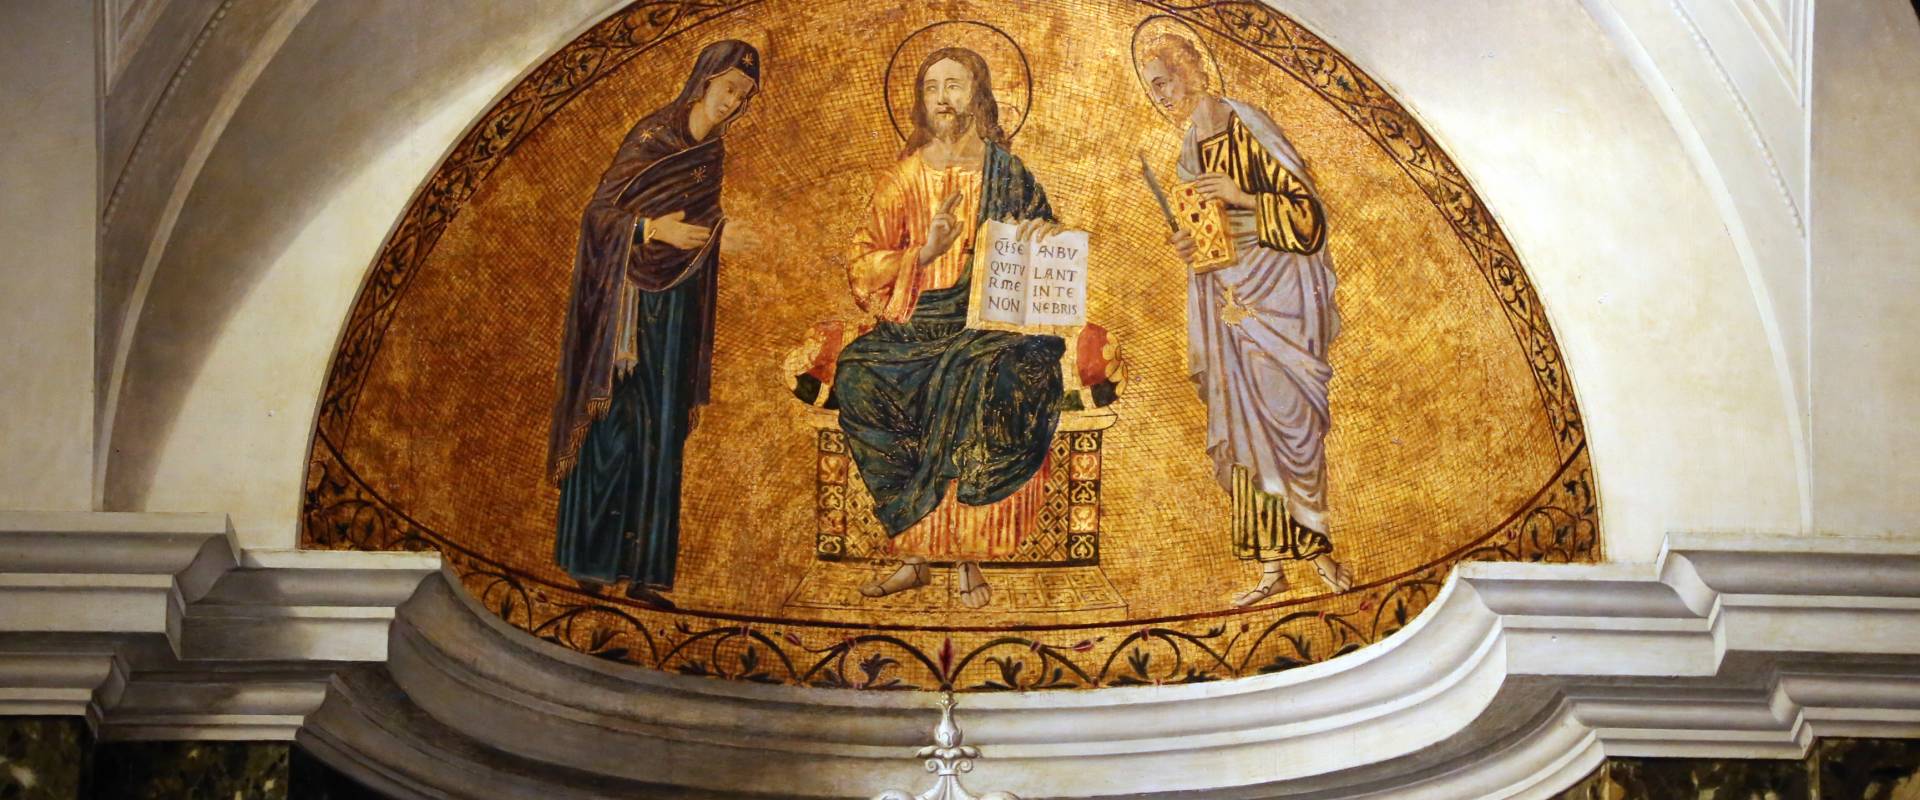 Cima da conegliano, sacra conversazione del duomo di prma, 1507 ca. 02 finto mosaico photo by Sailko